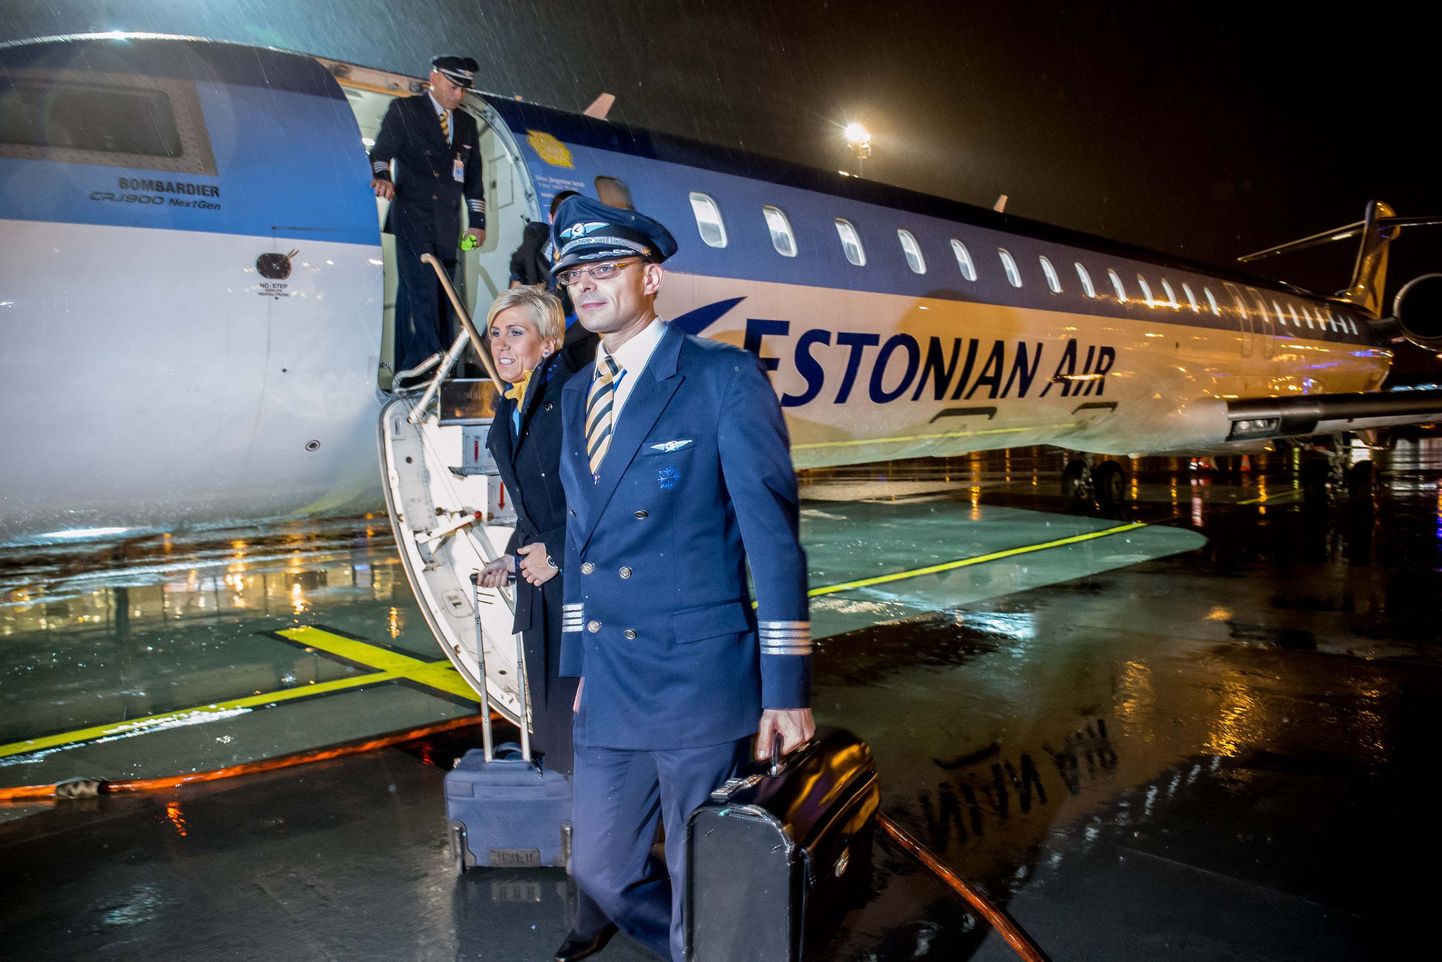 Последний рейс самолет Estonian Air  совершил 7 ноября 2015 года вечером. На первом плане пилот Иммануил Пярт.